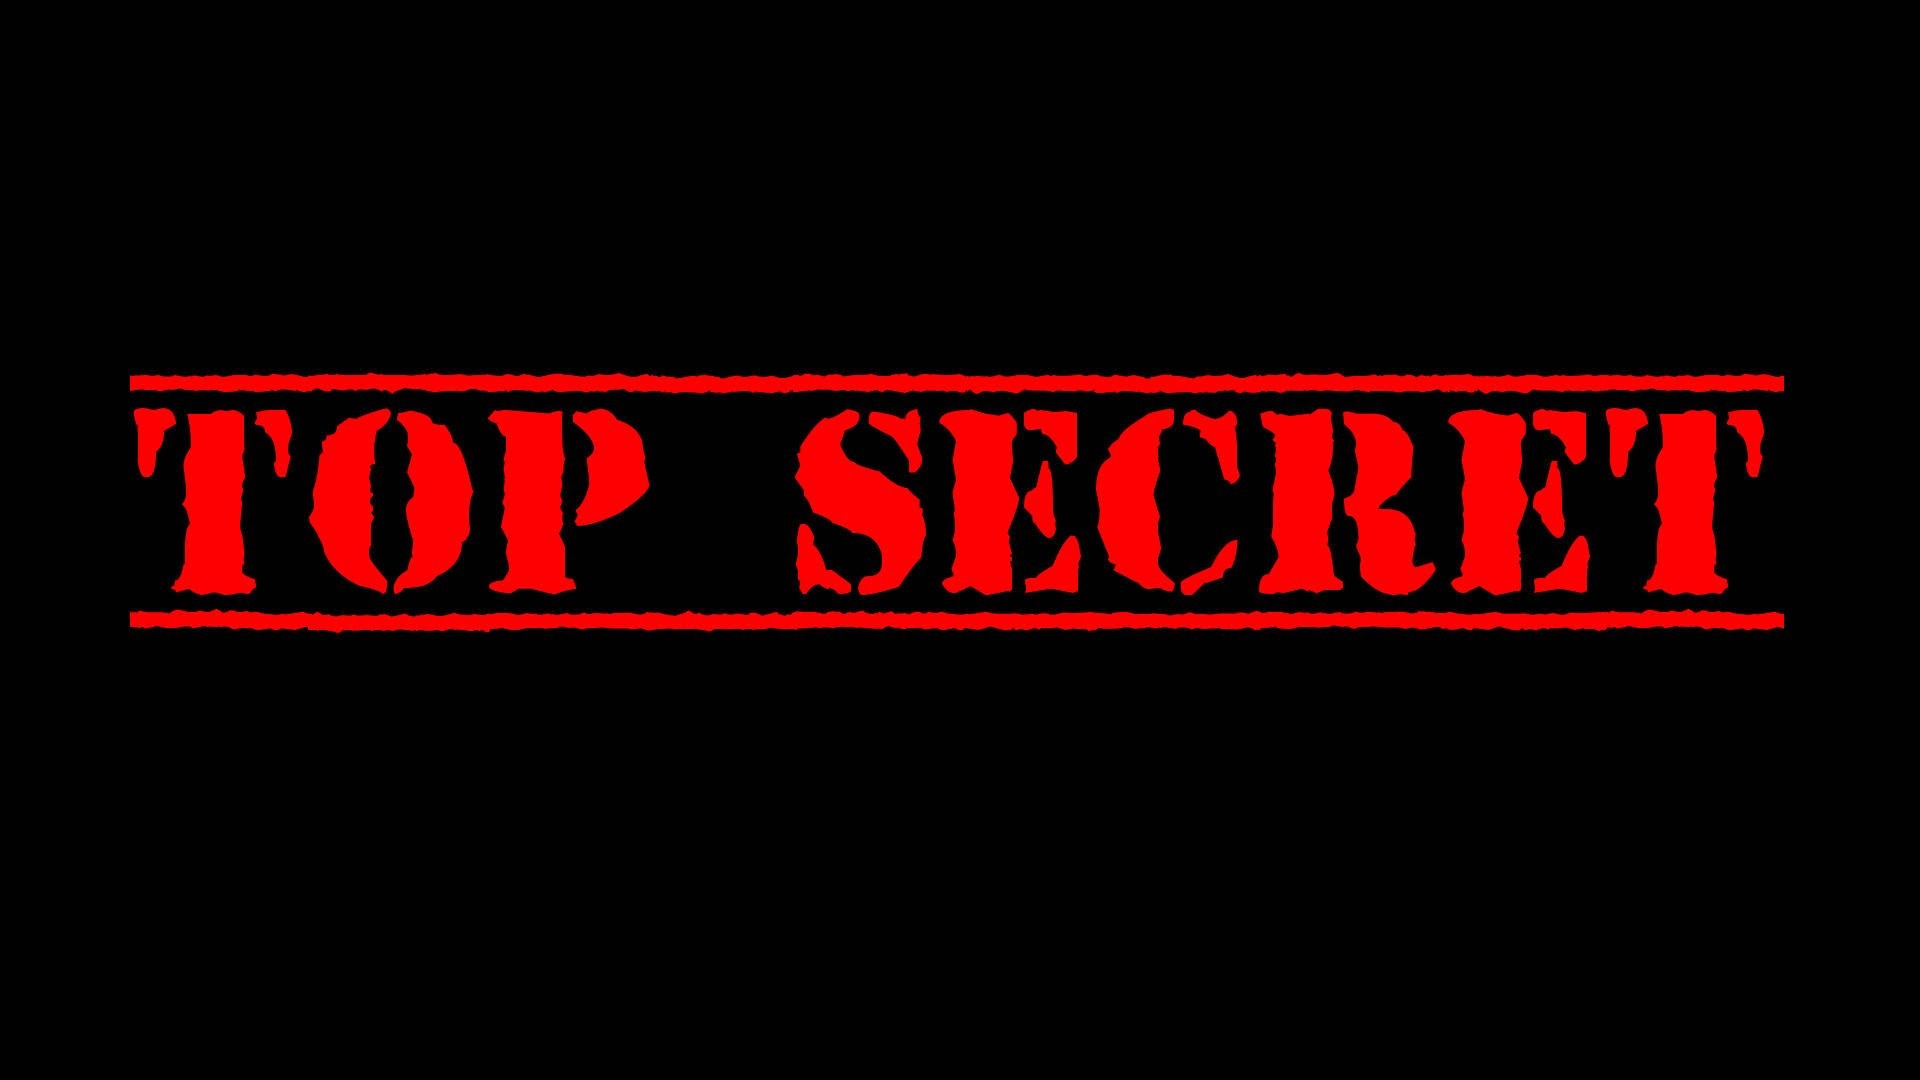 1920x1080 Top Secret....anschauen ist aber dennoch wichtig!!!